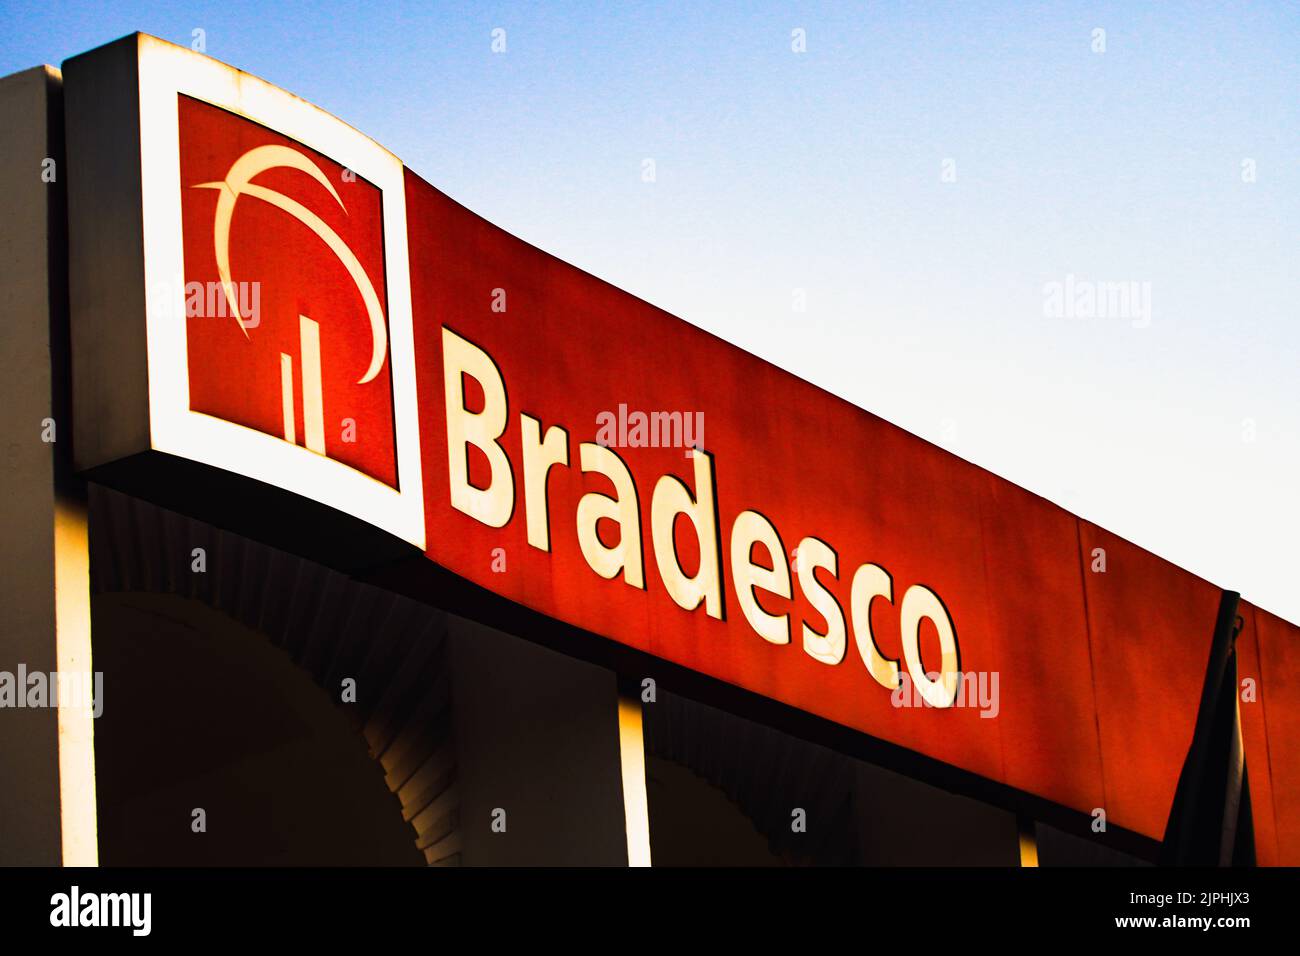 bradesco - bradesco added a new photo.